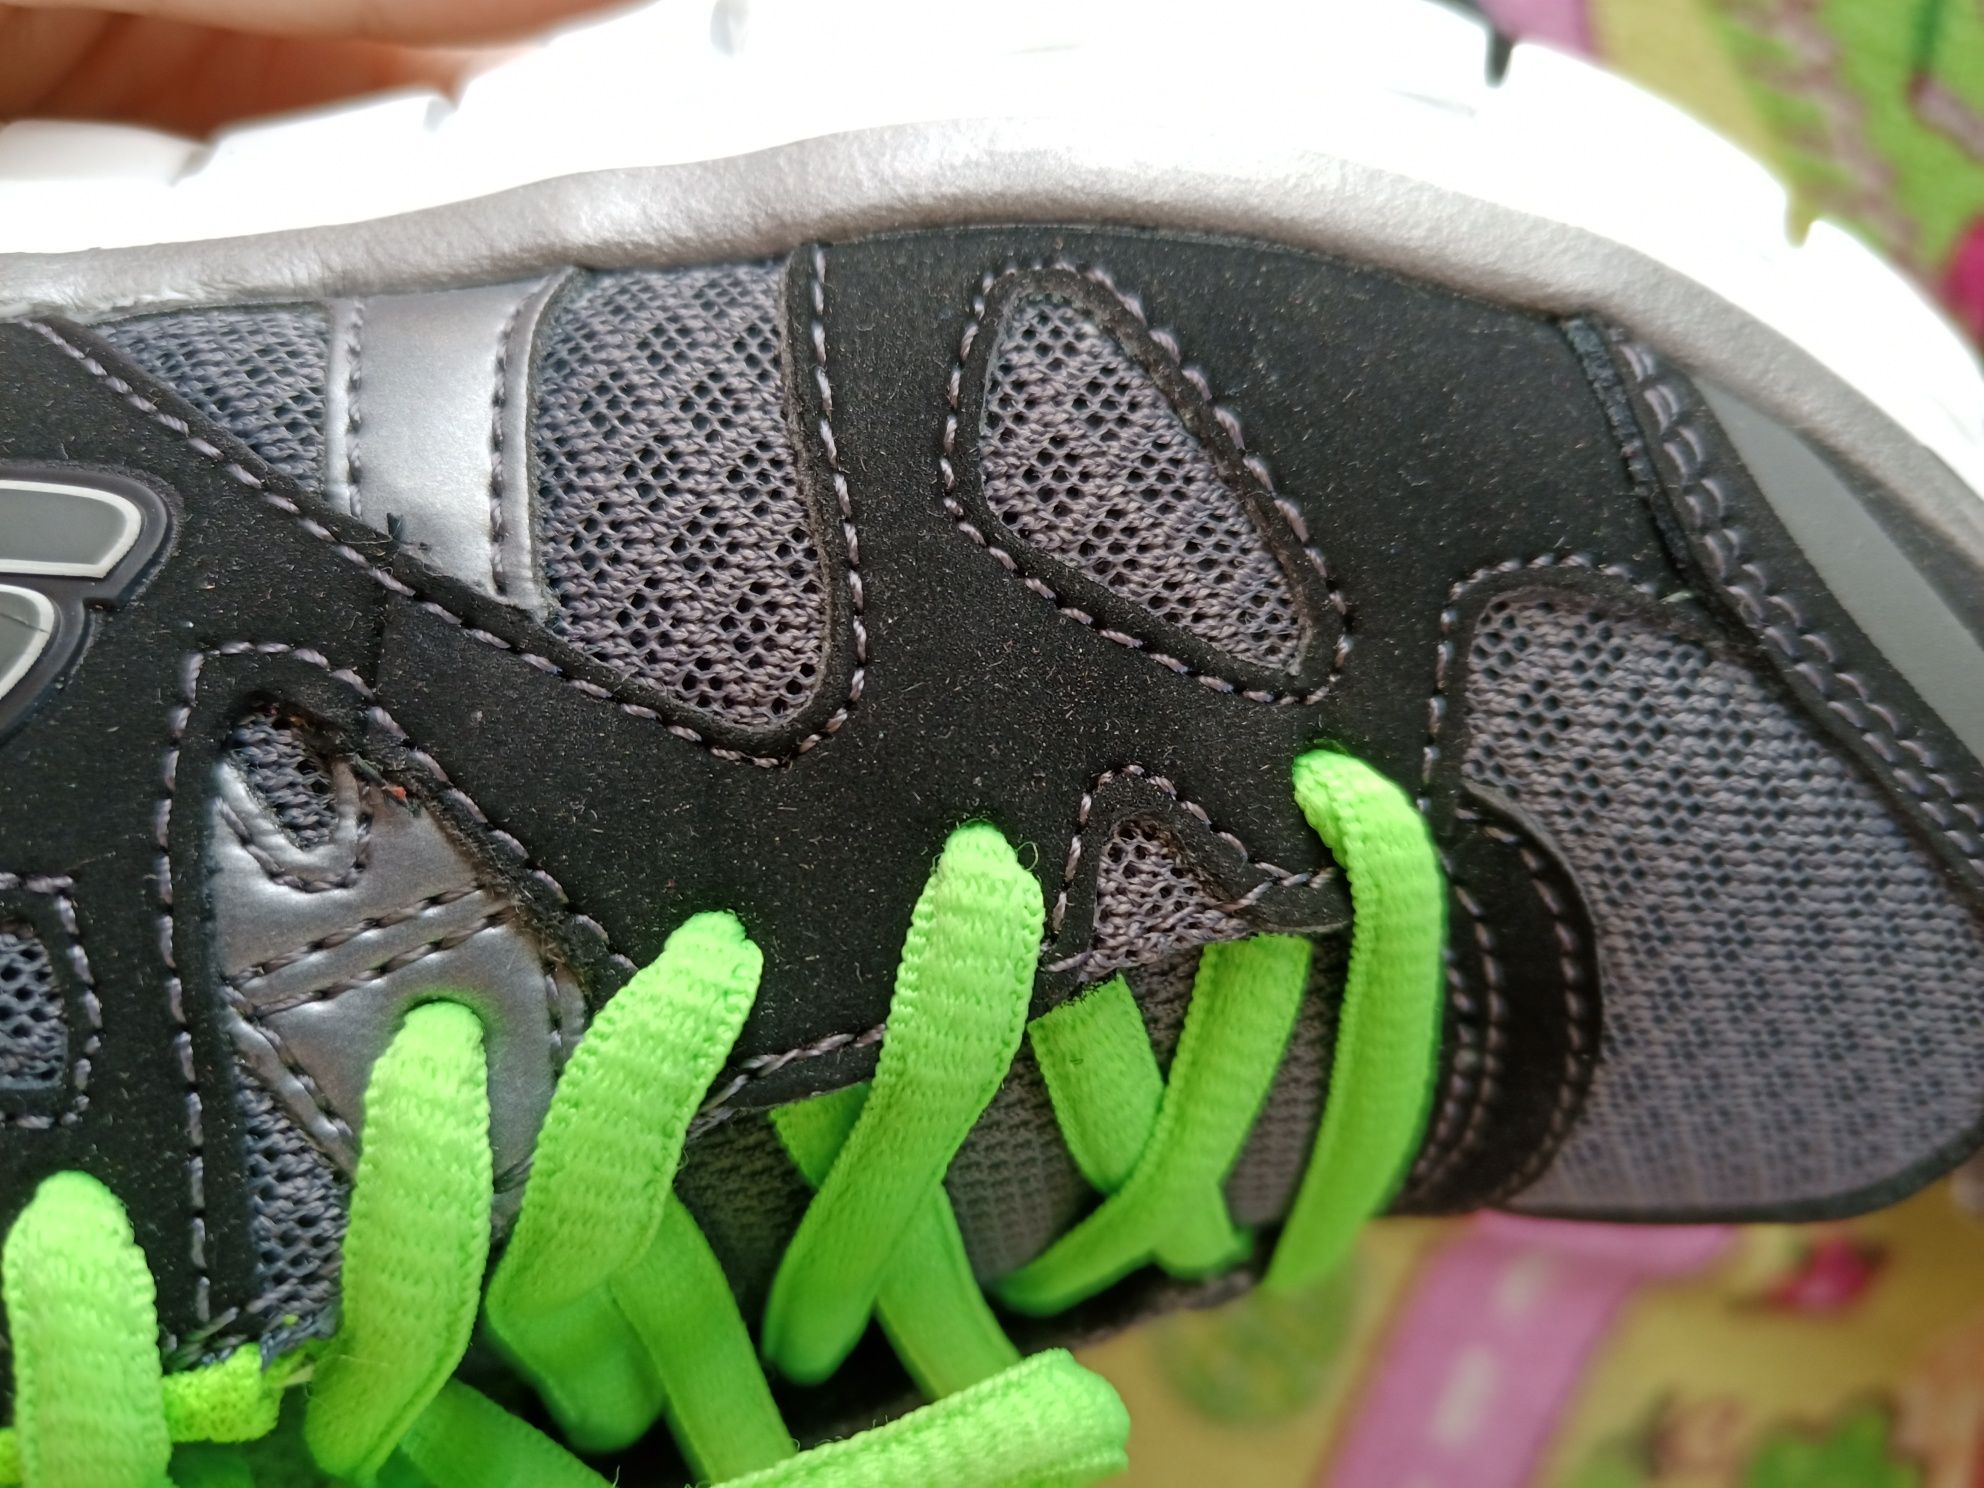 Skechers synergy sportowe buty chłopięce 30 wkładka 20 cm nowe